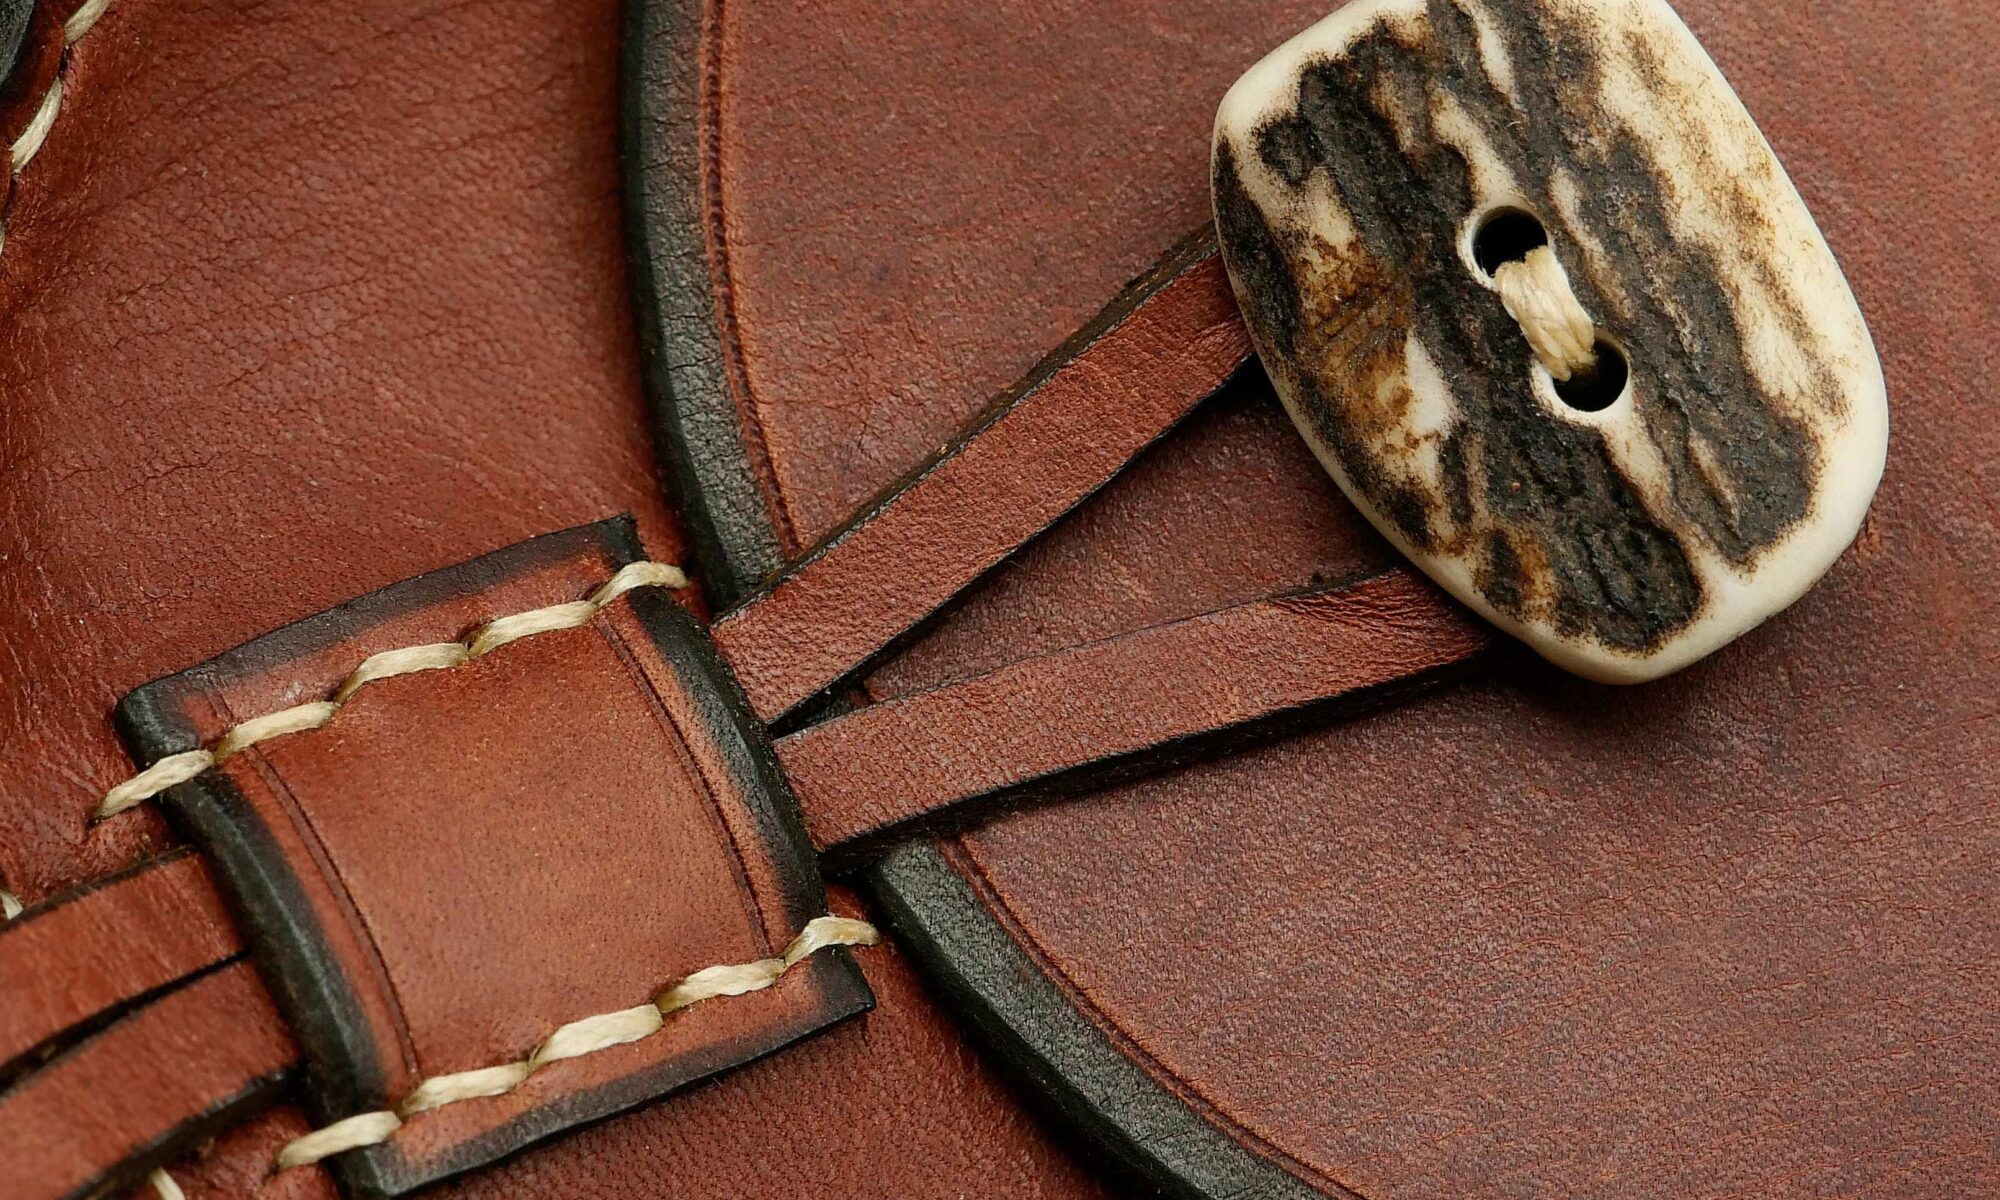 Reel leather case – Hermitvalley reels